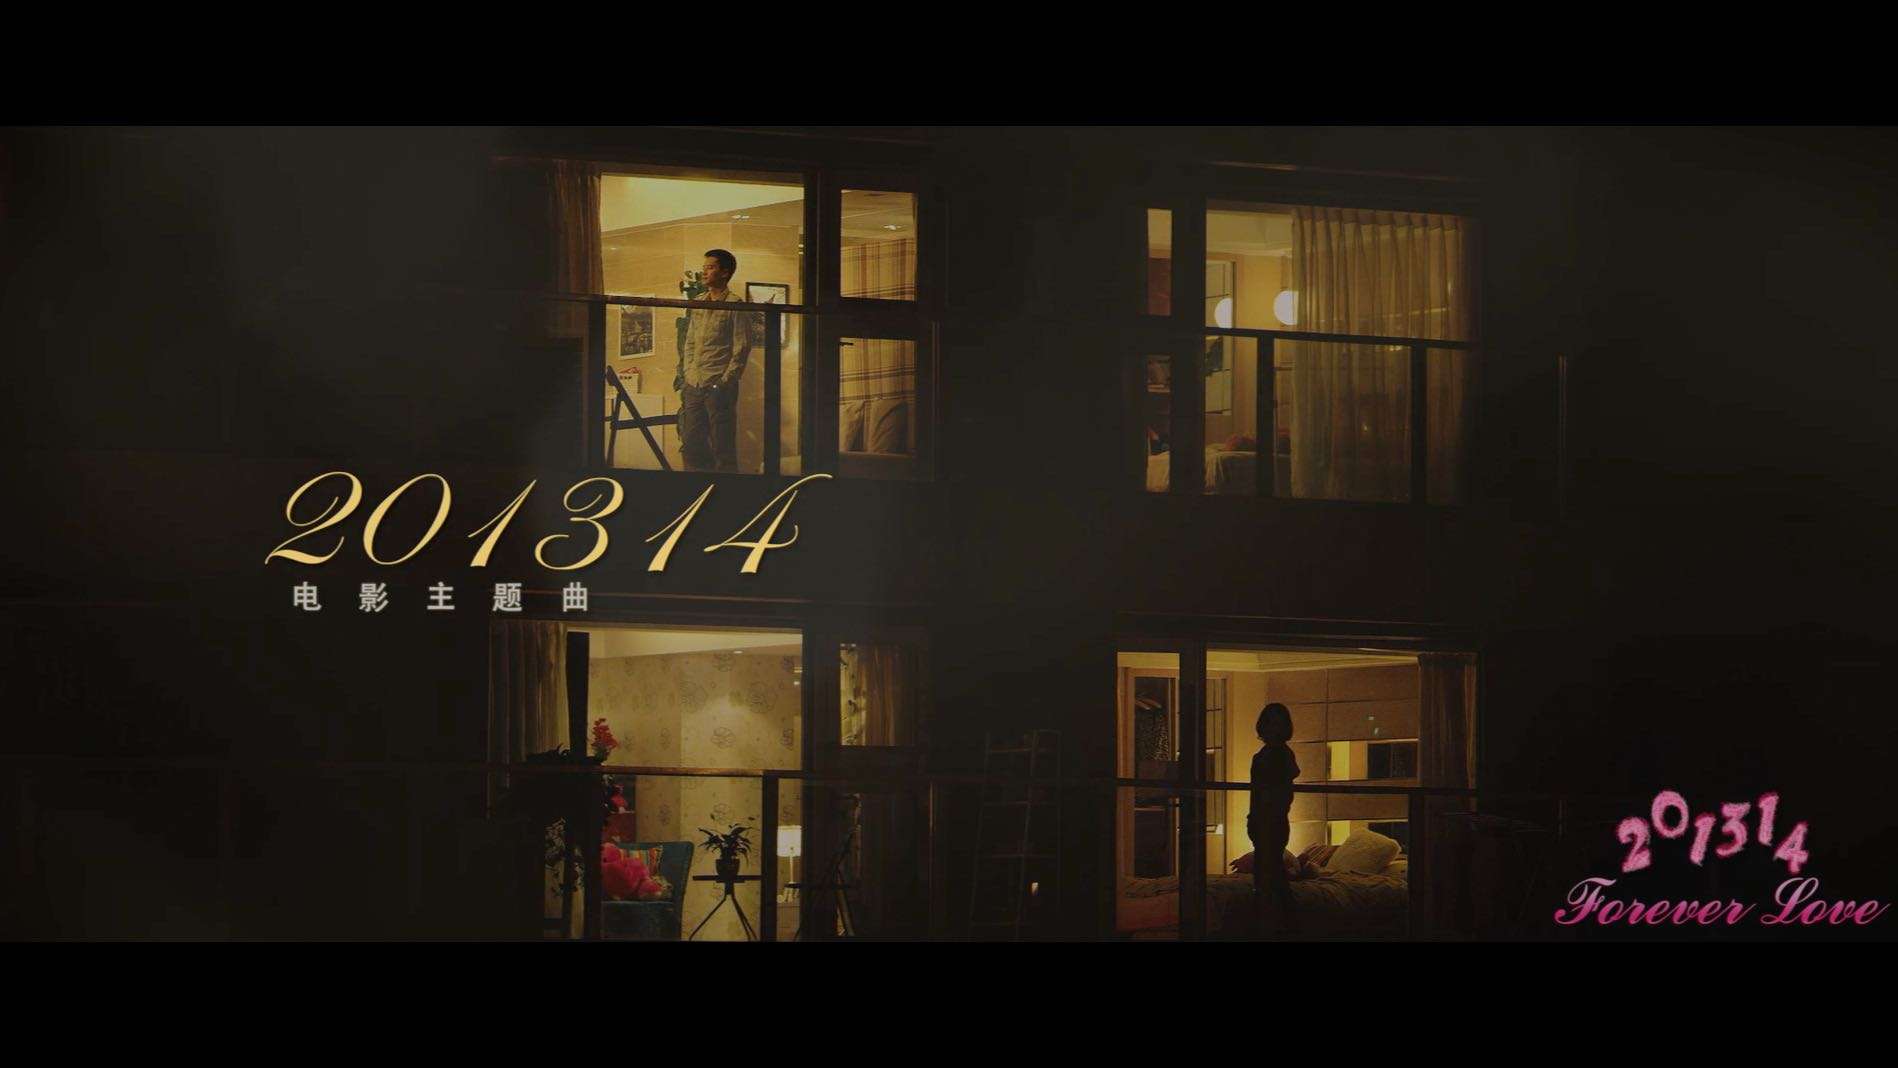 电影《201314》主题歌 MV  2013